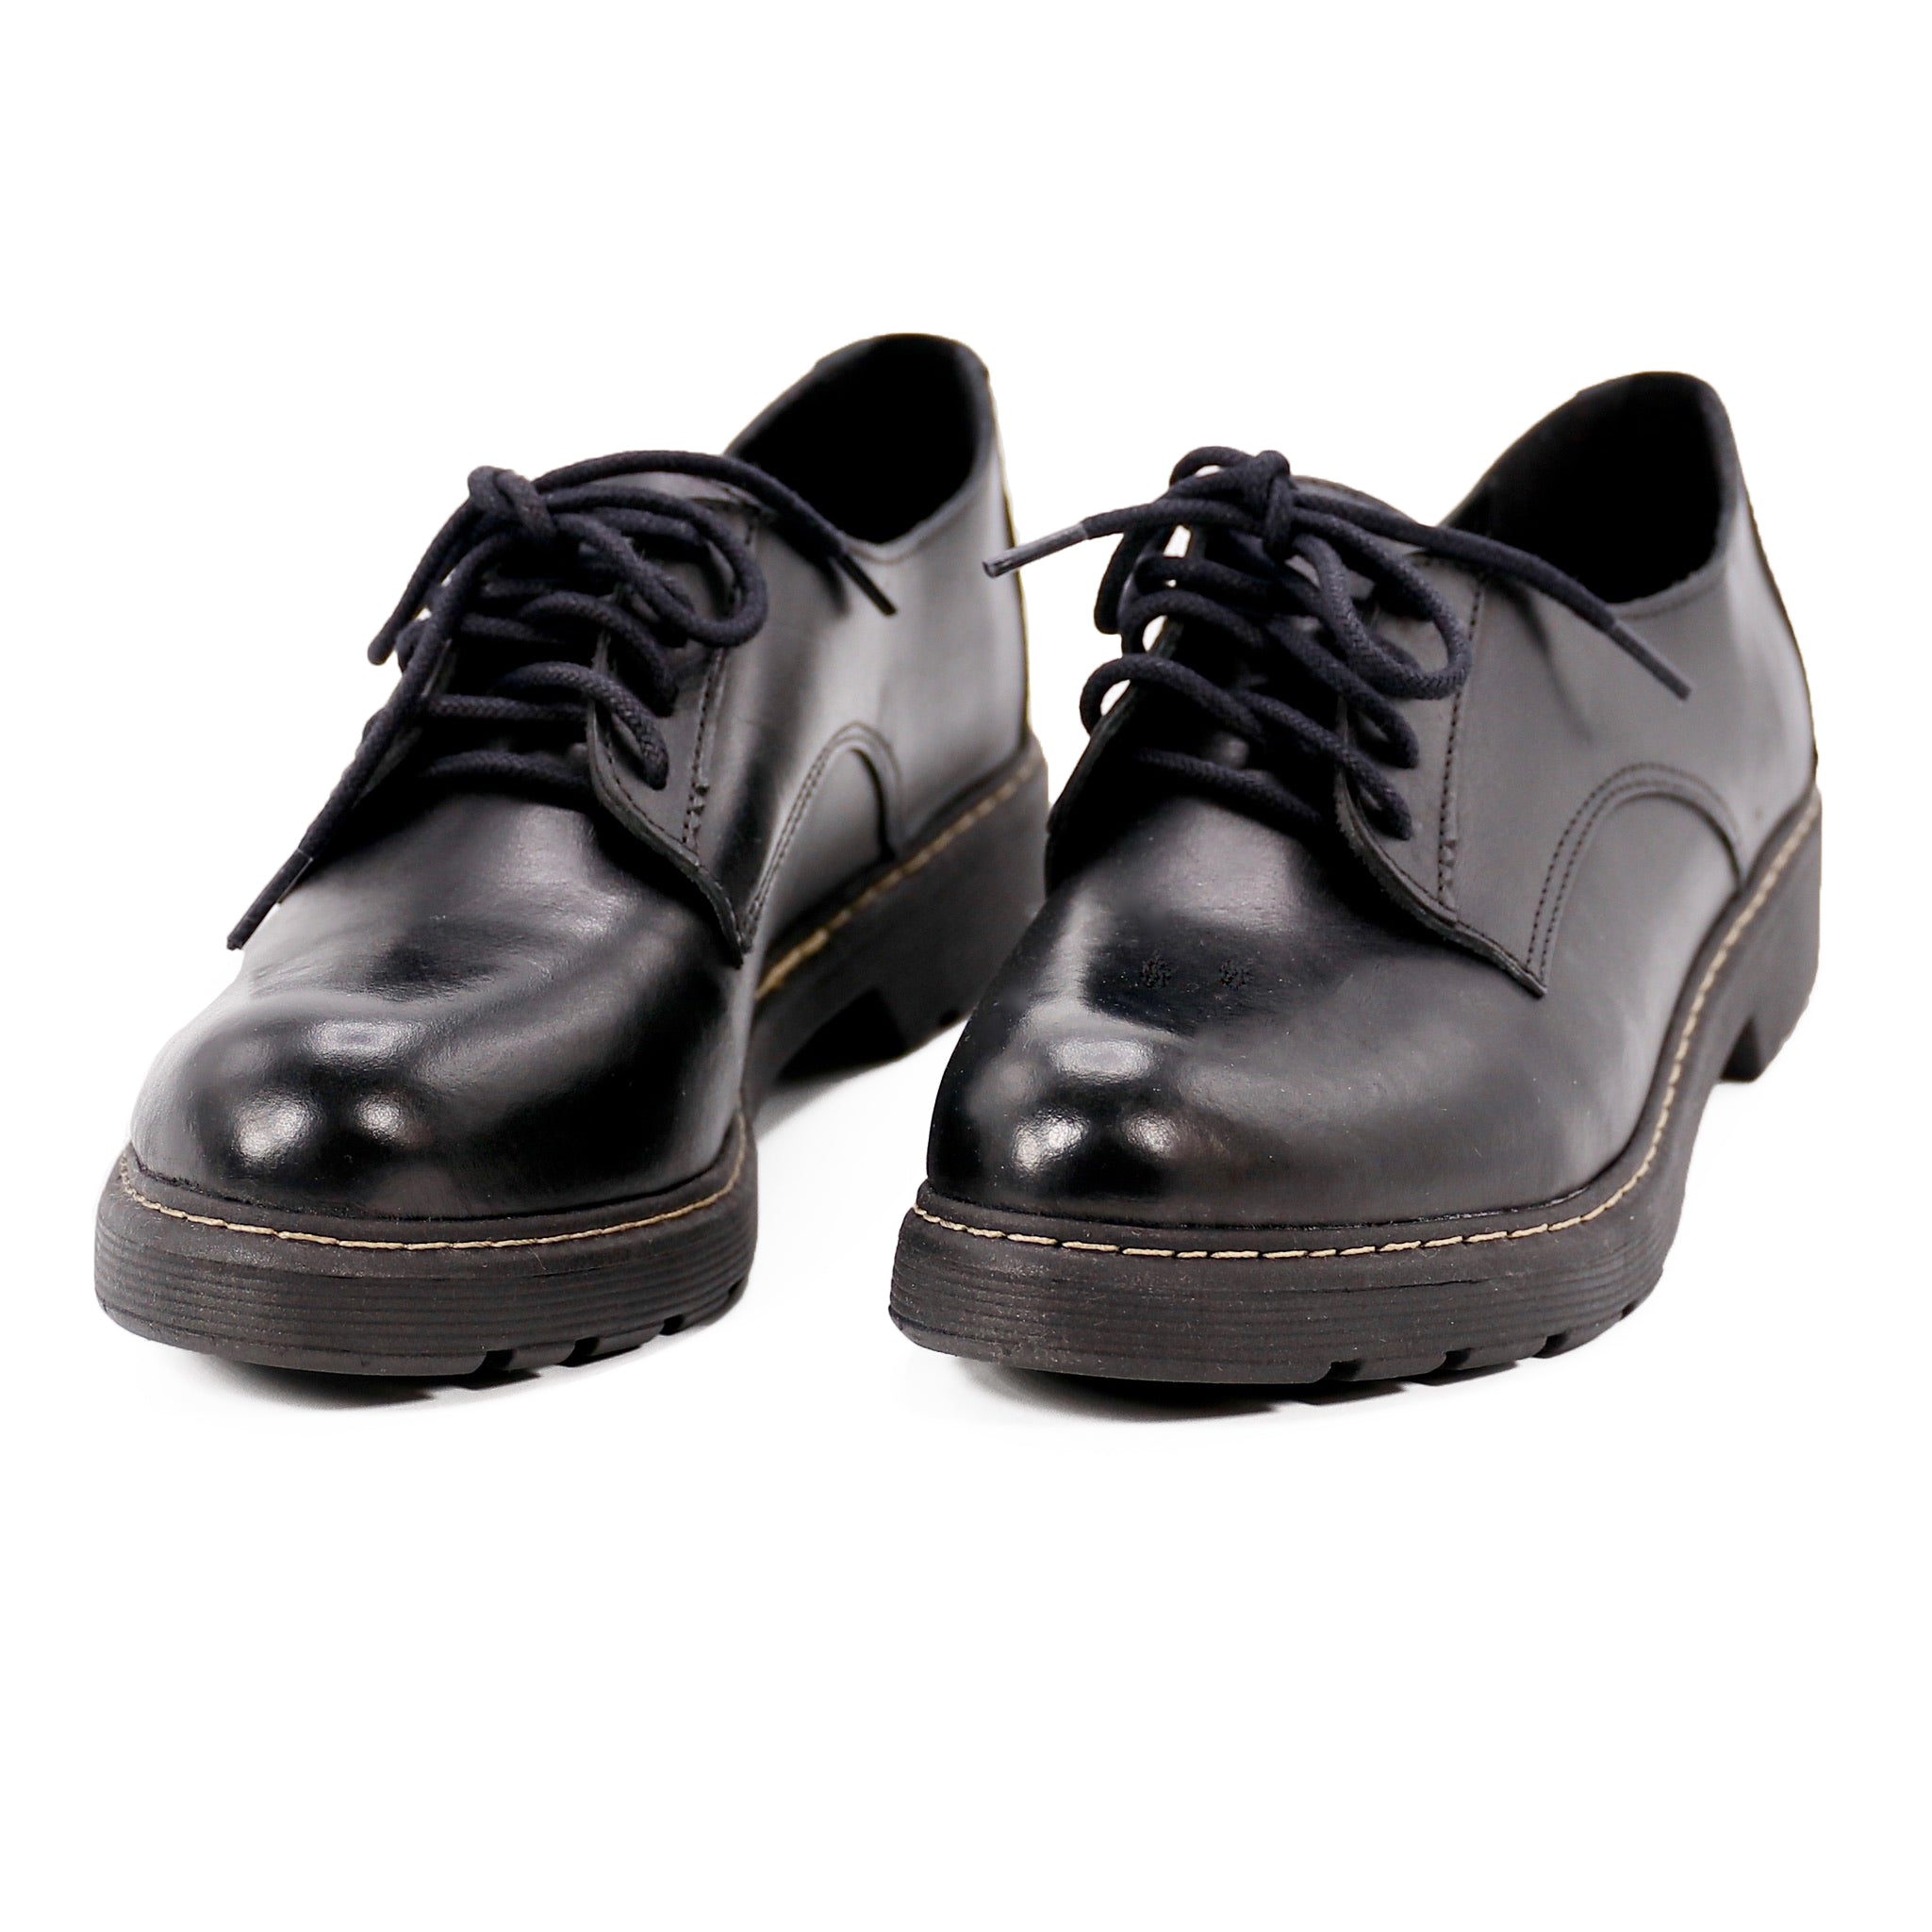 black leather designer shoes